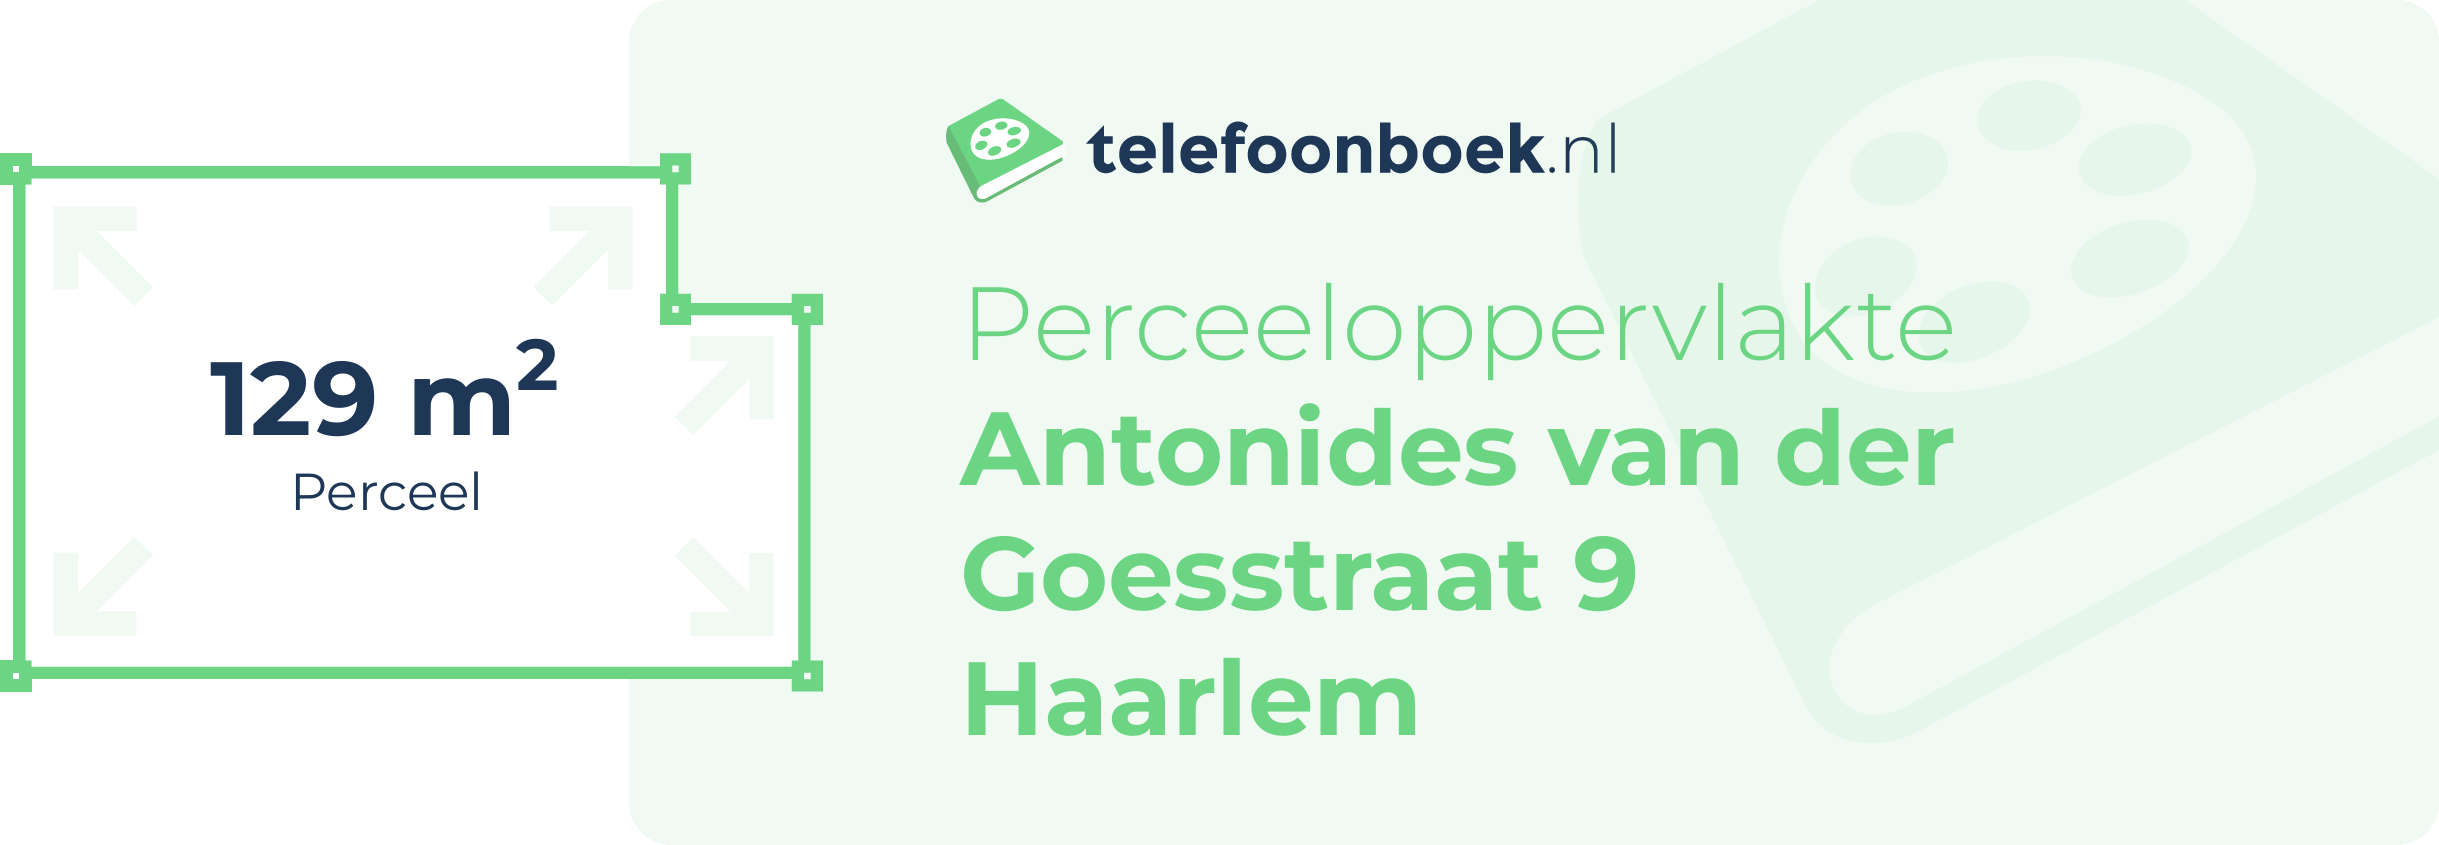 Perceeloppervlakte Antonides Van Der Goesstraat 9 Haarlem